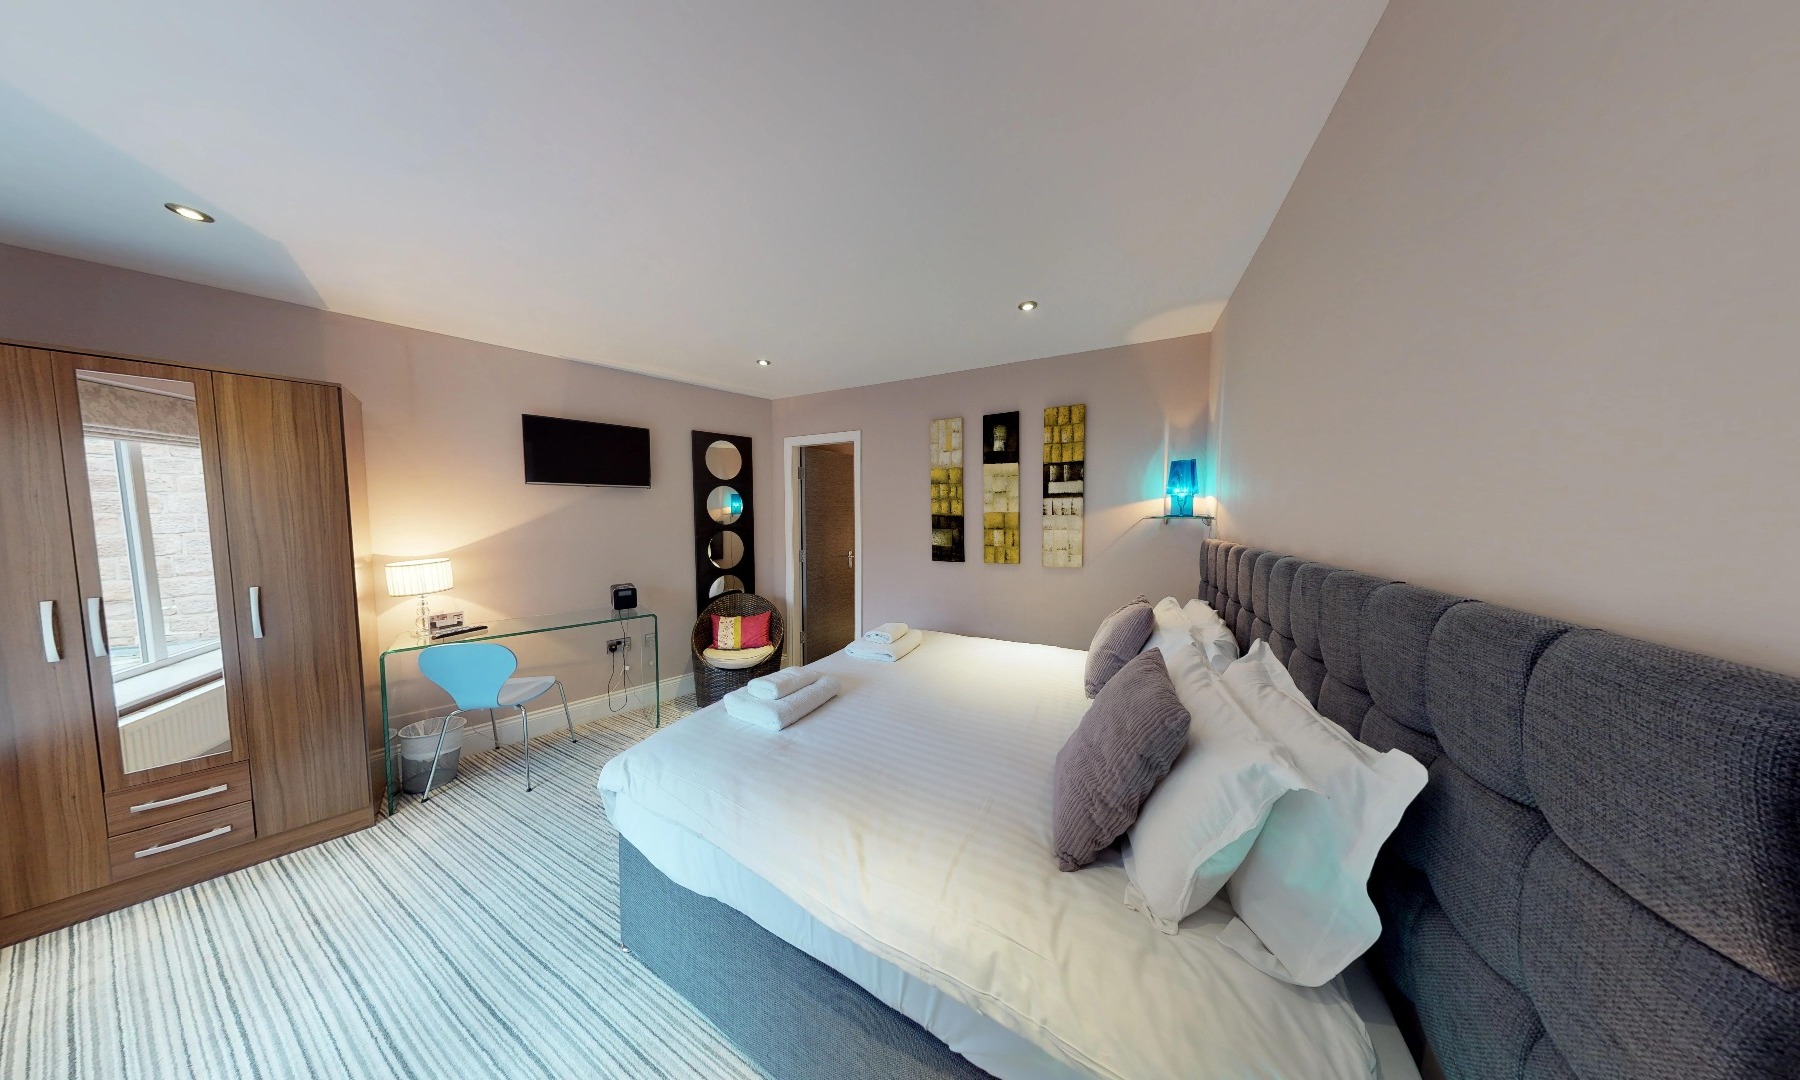 Booking luxury accommodation in Harrogate